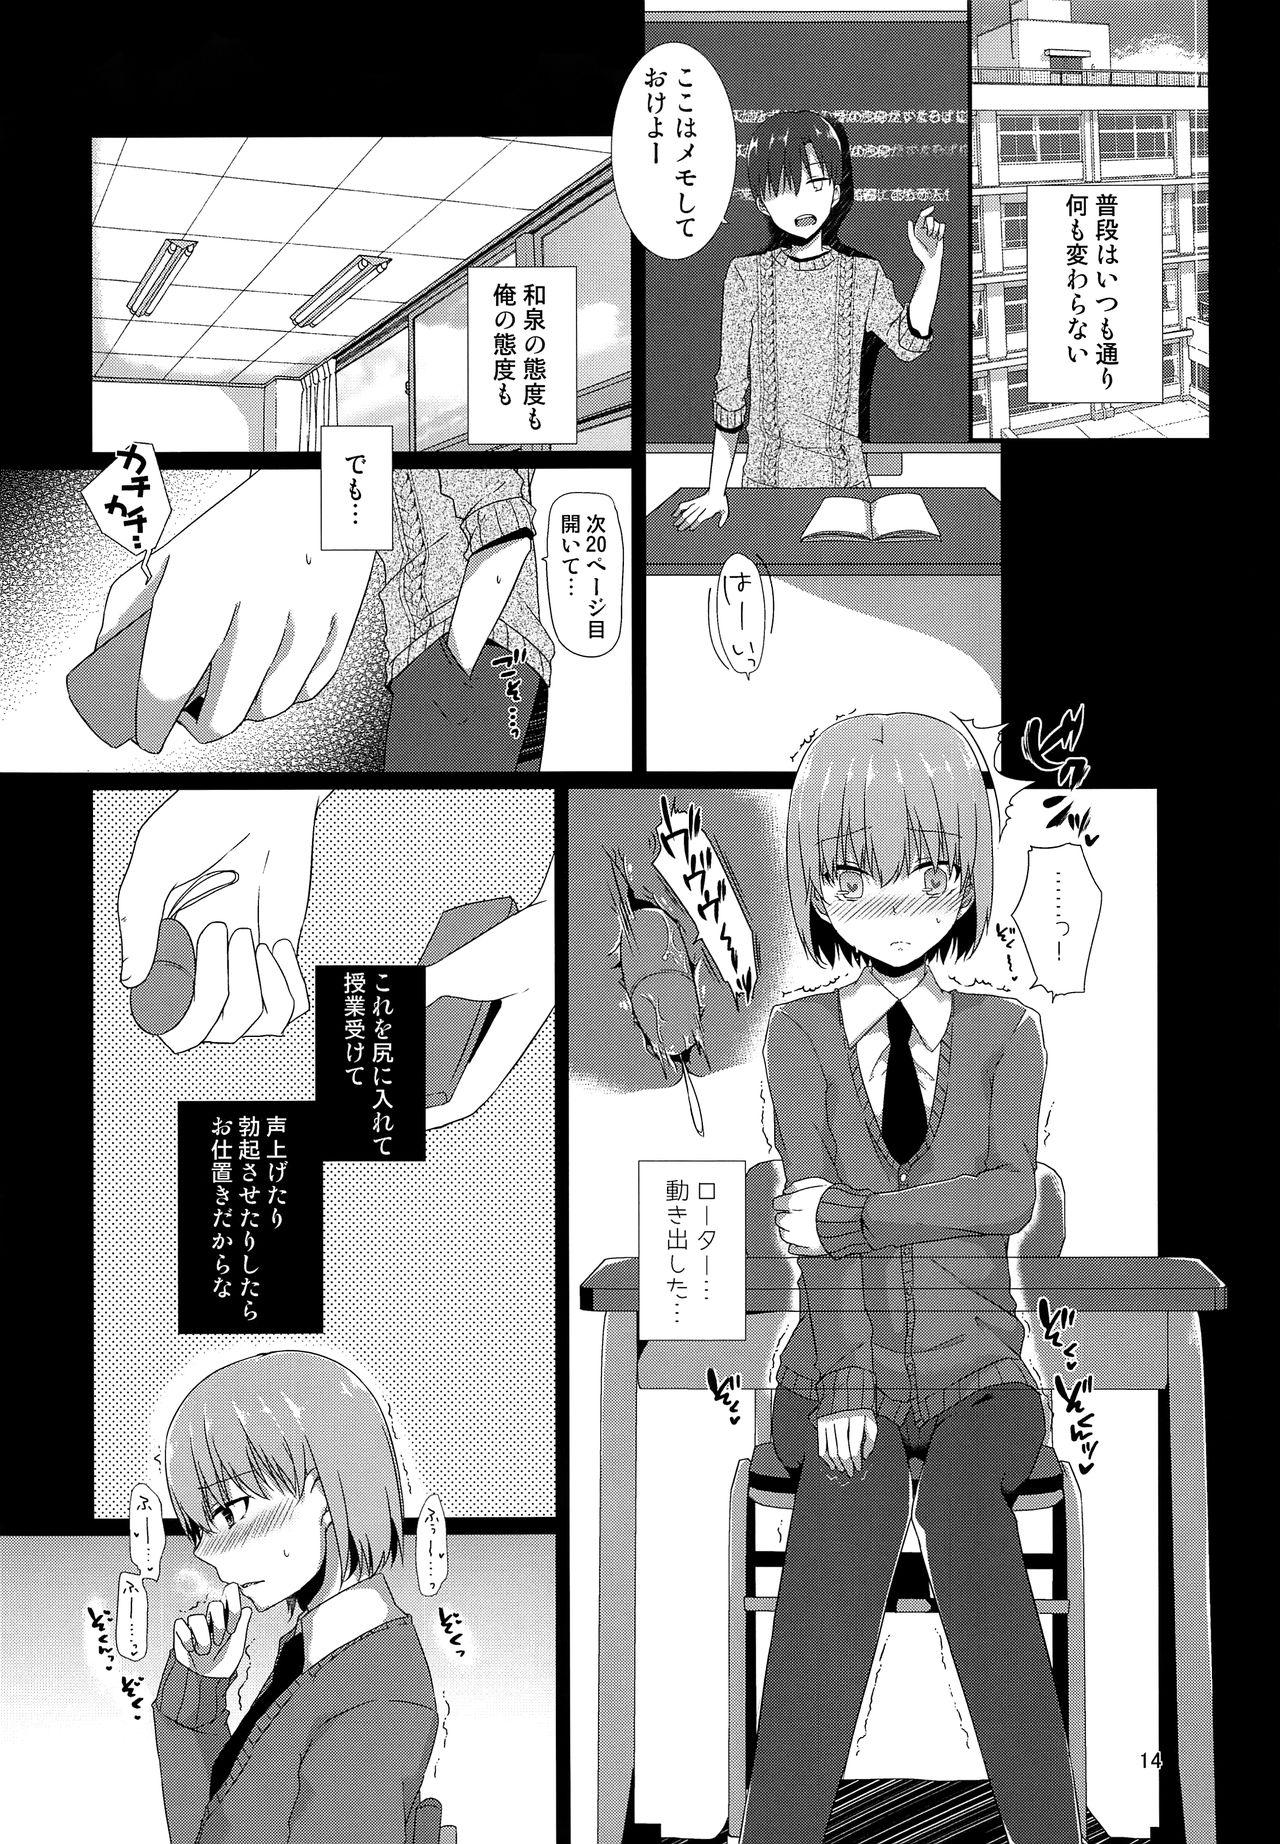 Perverted "Sensei, boku o katte kuremasen ka?" - Original Morena - Page 13